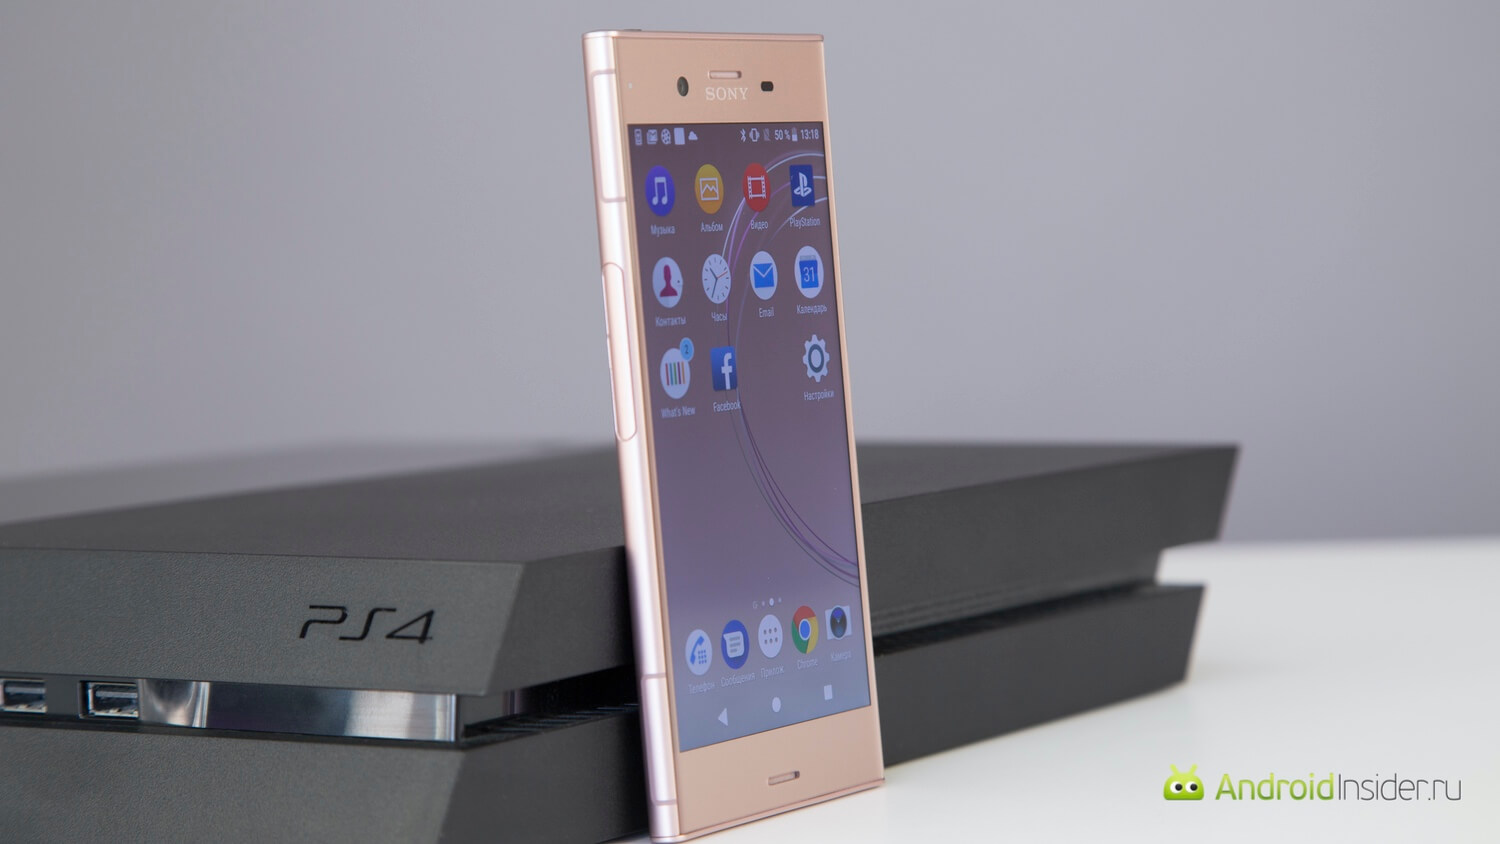 Видеообзор: Sony Xperia XZ1 — почти как Premium, но чуть-чуть попроще. Что еще там есть? Фото.